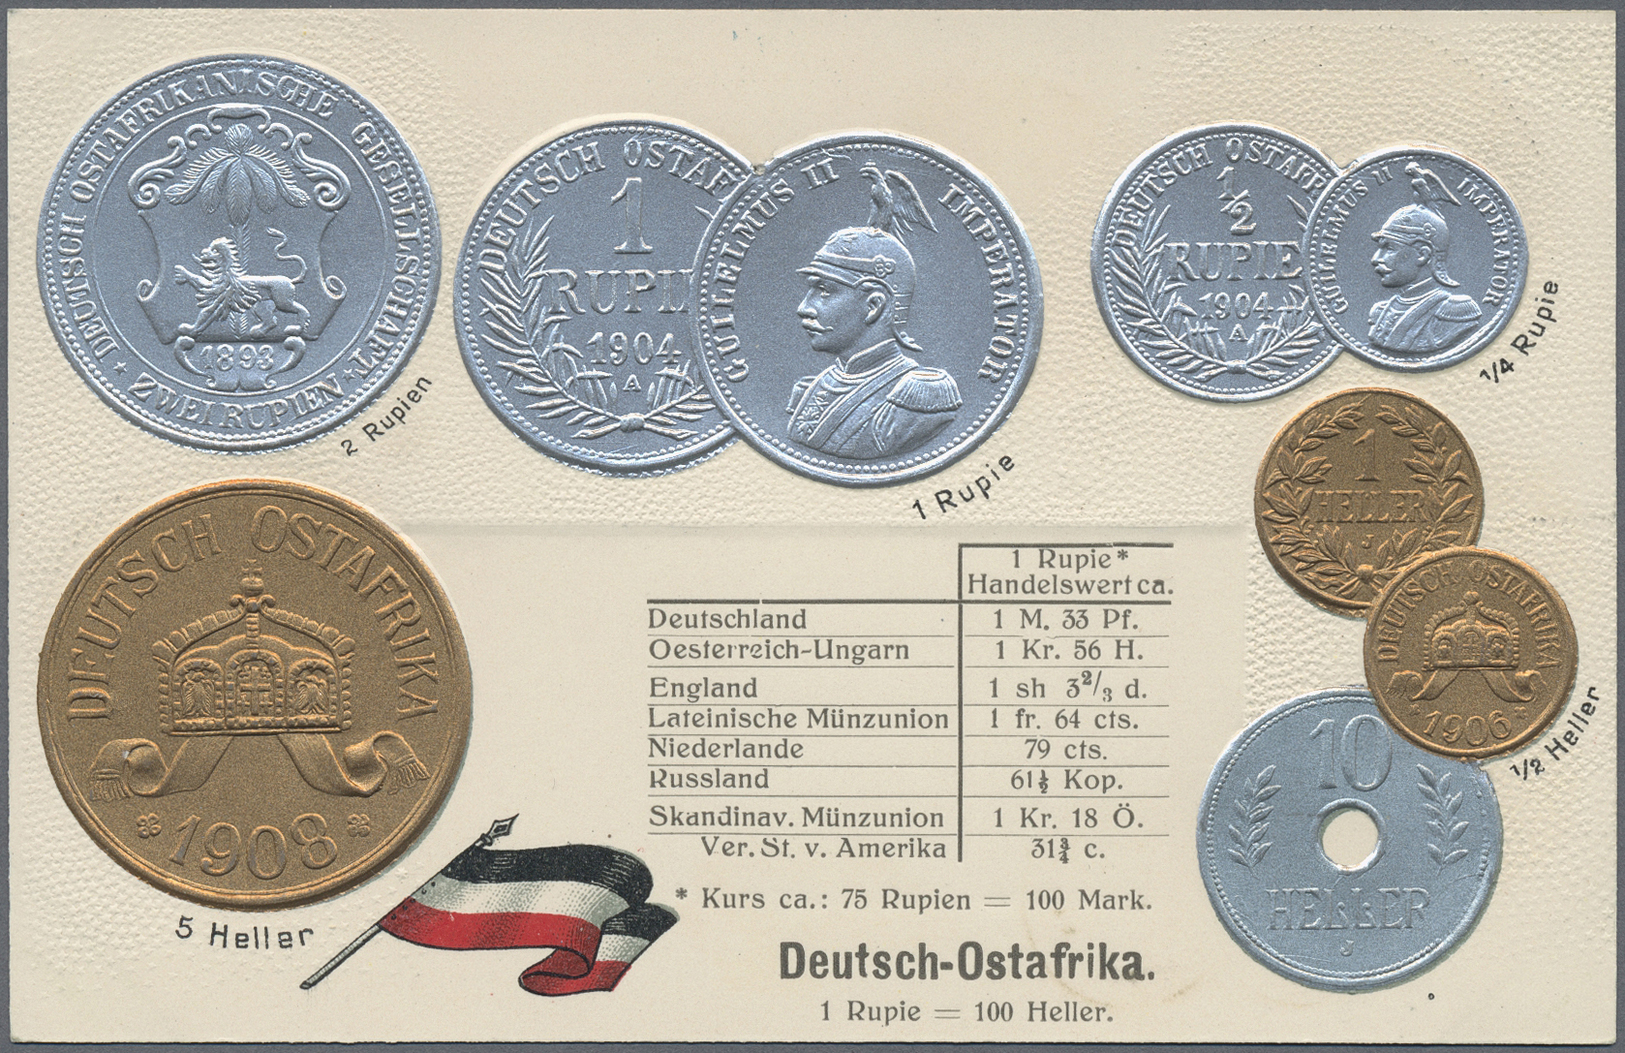 GA/ Deutschland - Ganzsachen: 1895 - 1920 (ca.), umfangreicher Posten Ansichtskarten und Privat-Ganzsach